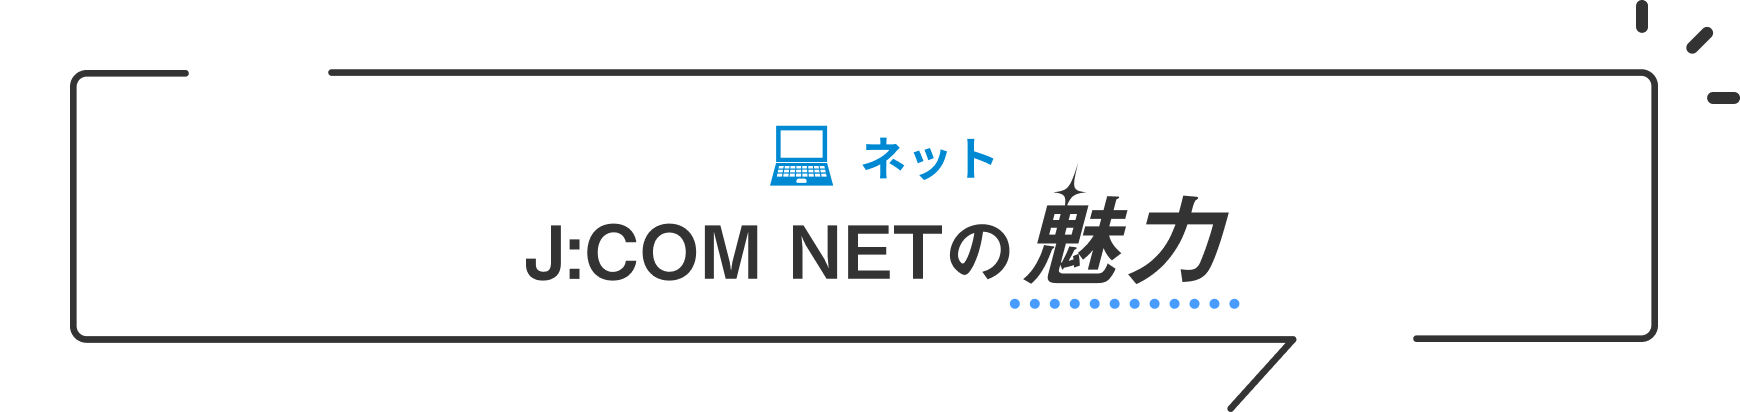 ネット J:COM NETの魅力